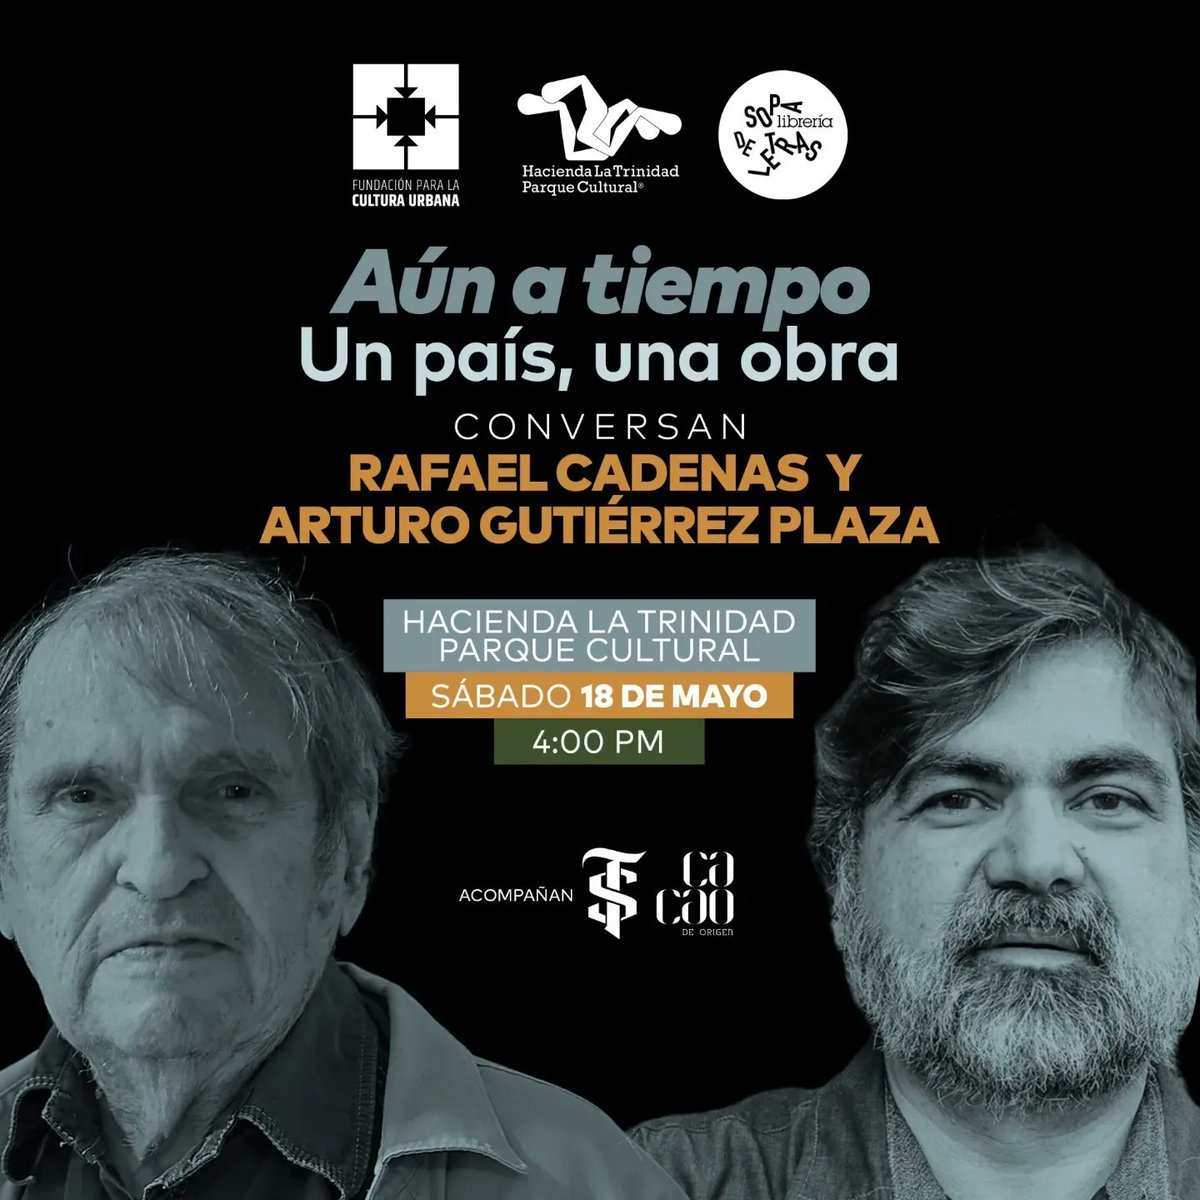 Conversatorio «Aún a tiempo. Una ciudad, una obra», con #RafaelCadenas y #ArturoGutiérrezPlaza.

Asiste este sábado 18/5 (4pm) a este evento de entrada libre organizado por la #FCU, junto a @TrinidadCultura, @LaSopaDeLetras, acompañados por @RonSantaTeresa y @CacaoDeOrigen